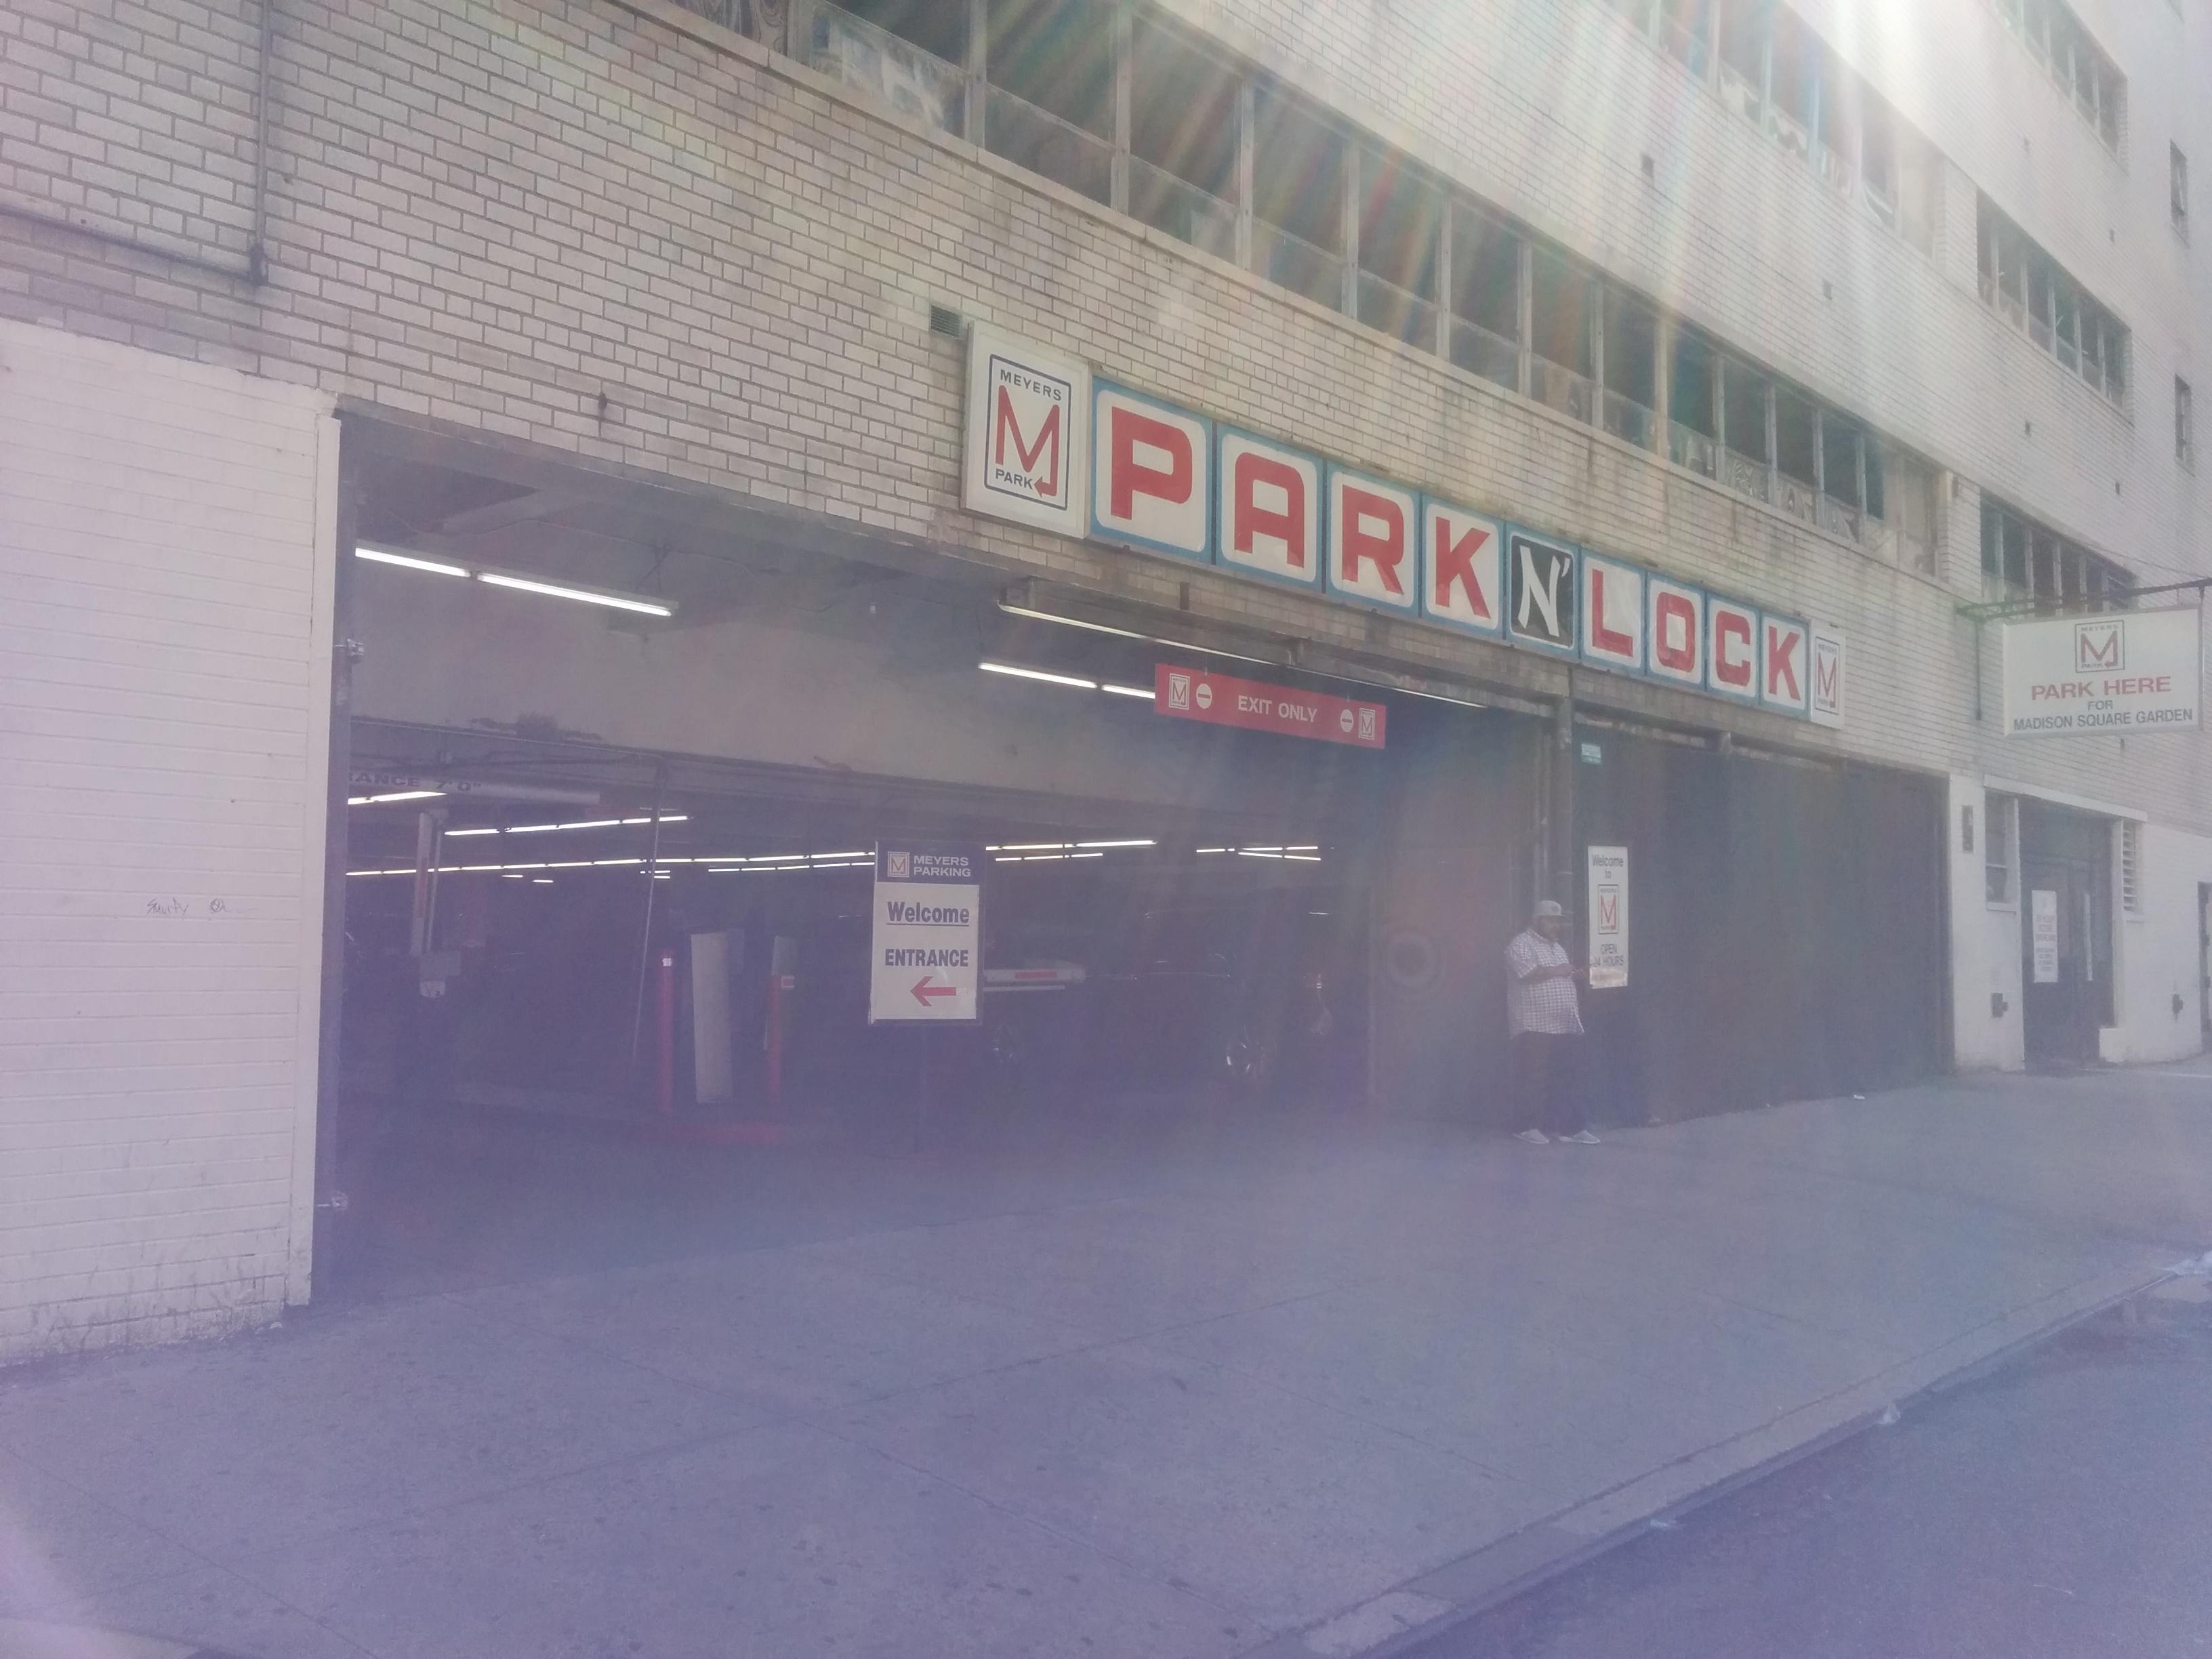 227 W 30th St Garage Parkplatz In New York Parkme